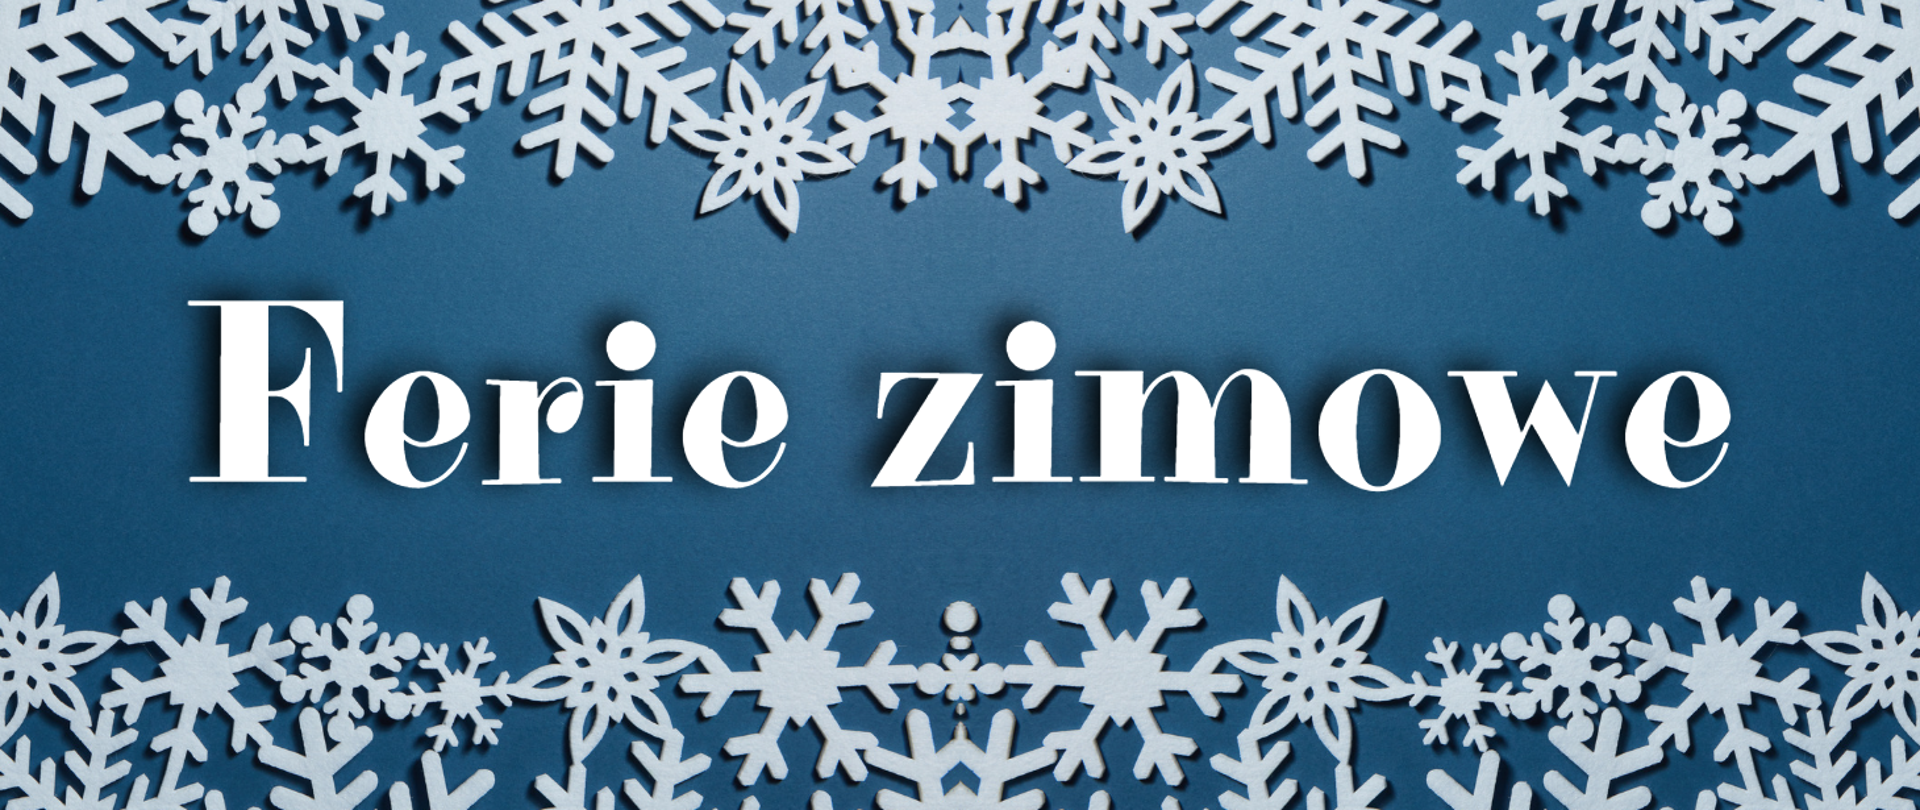 Grafika zawiera tekst: "Ferie zimowe". Tło niebieskie, napis biały umieszczony w części centralnej. U góry i u dołu pasy z białych papierowych symboli płatków śniegu.